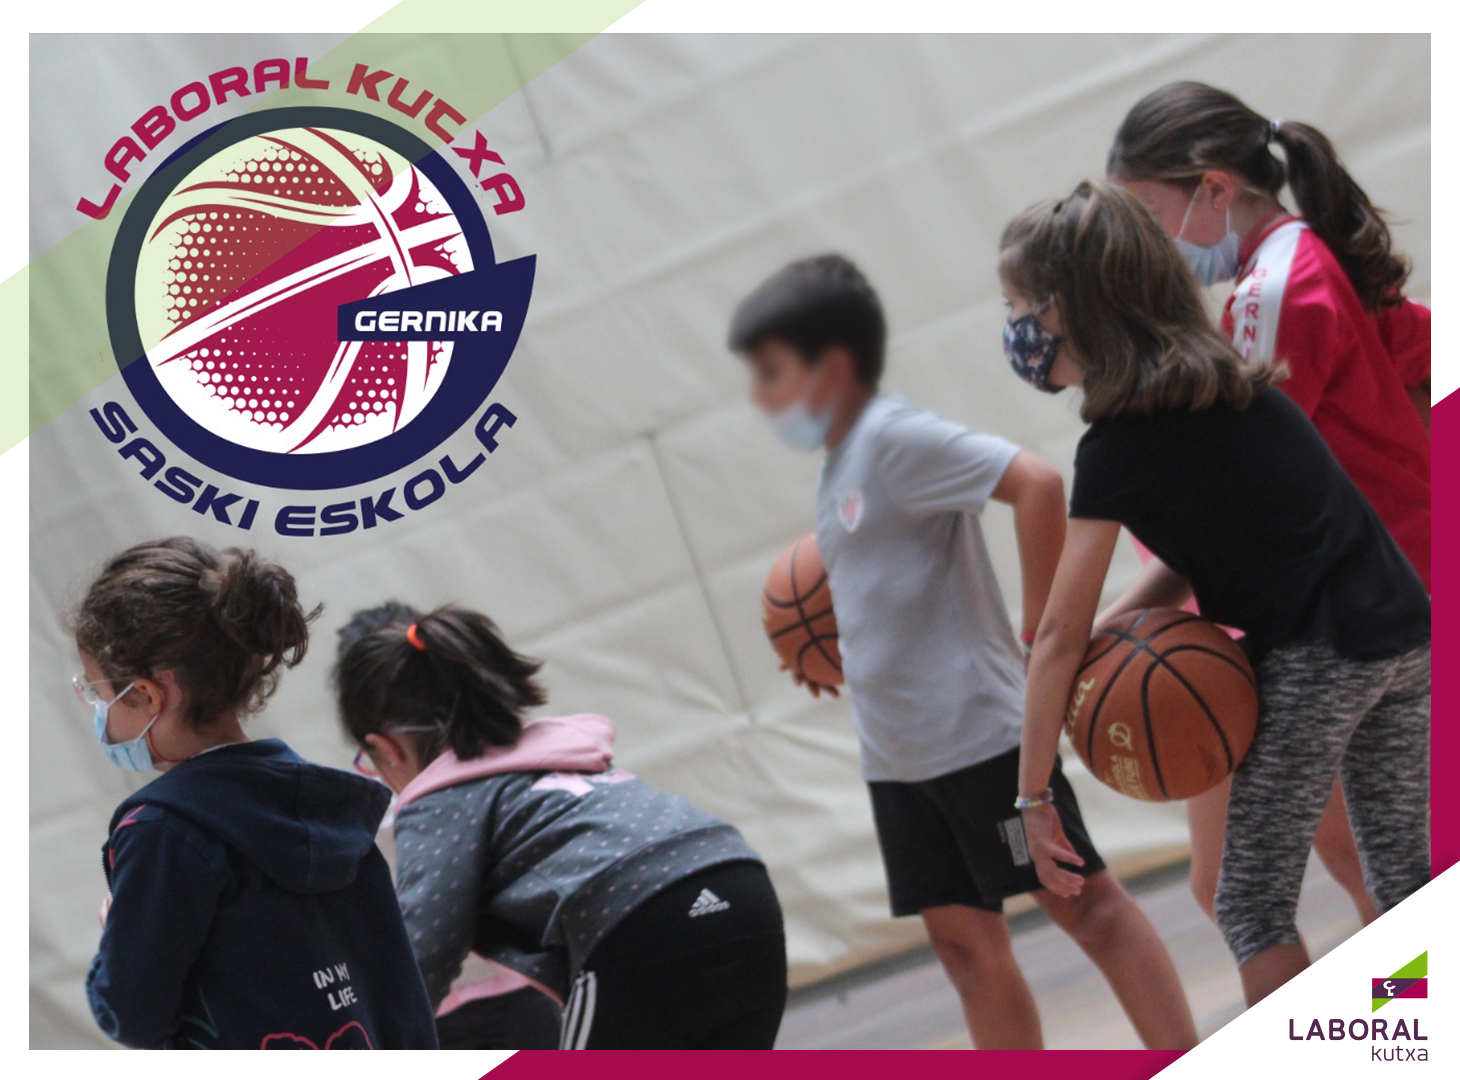 Saski Eskola de Gernika, baloncesto, valores e igualdad para txikis de Urdaibai